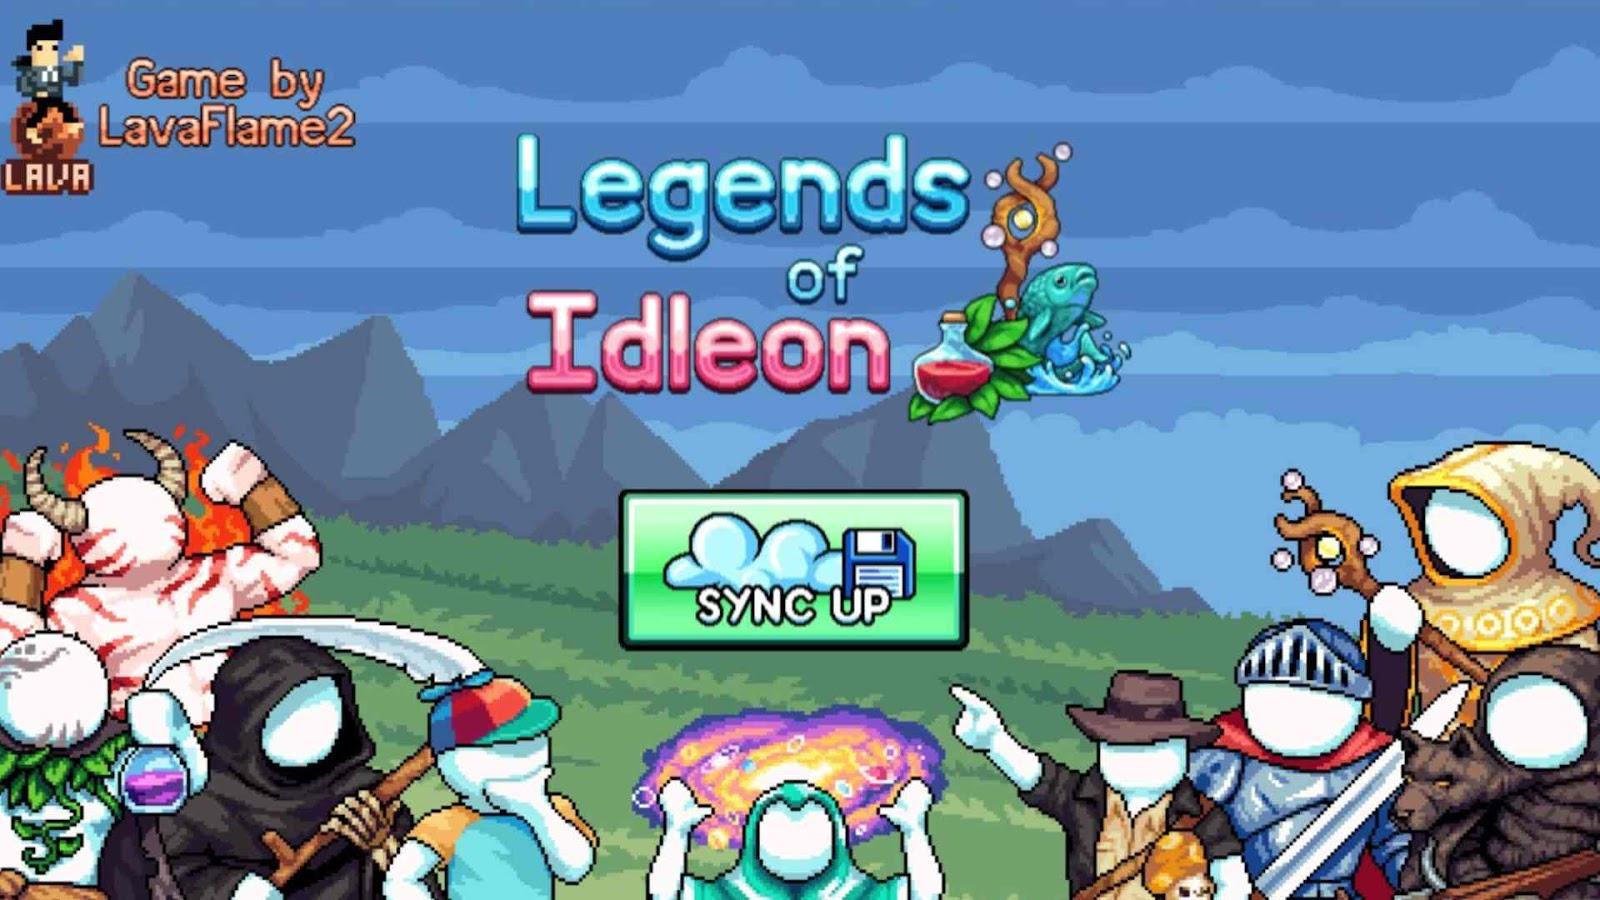 Legends of Idleon - A Multi-class Adventure